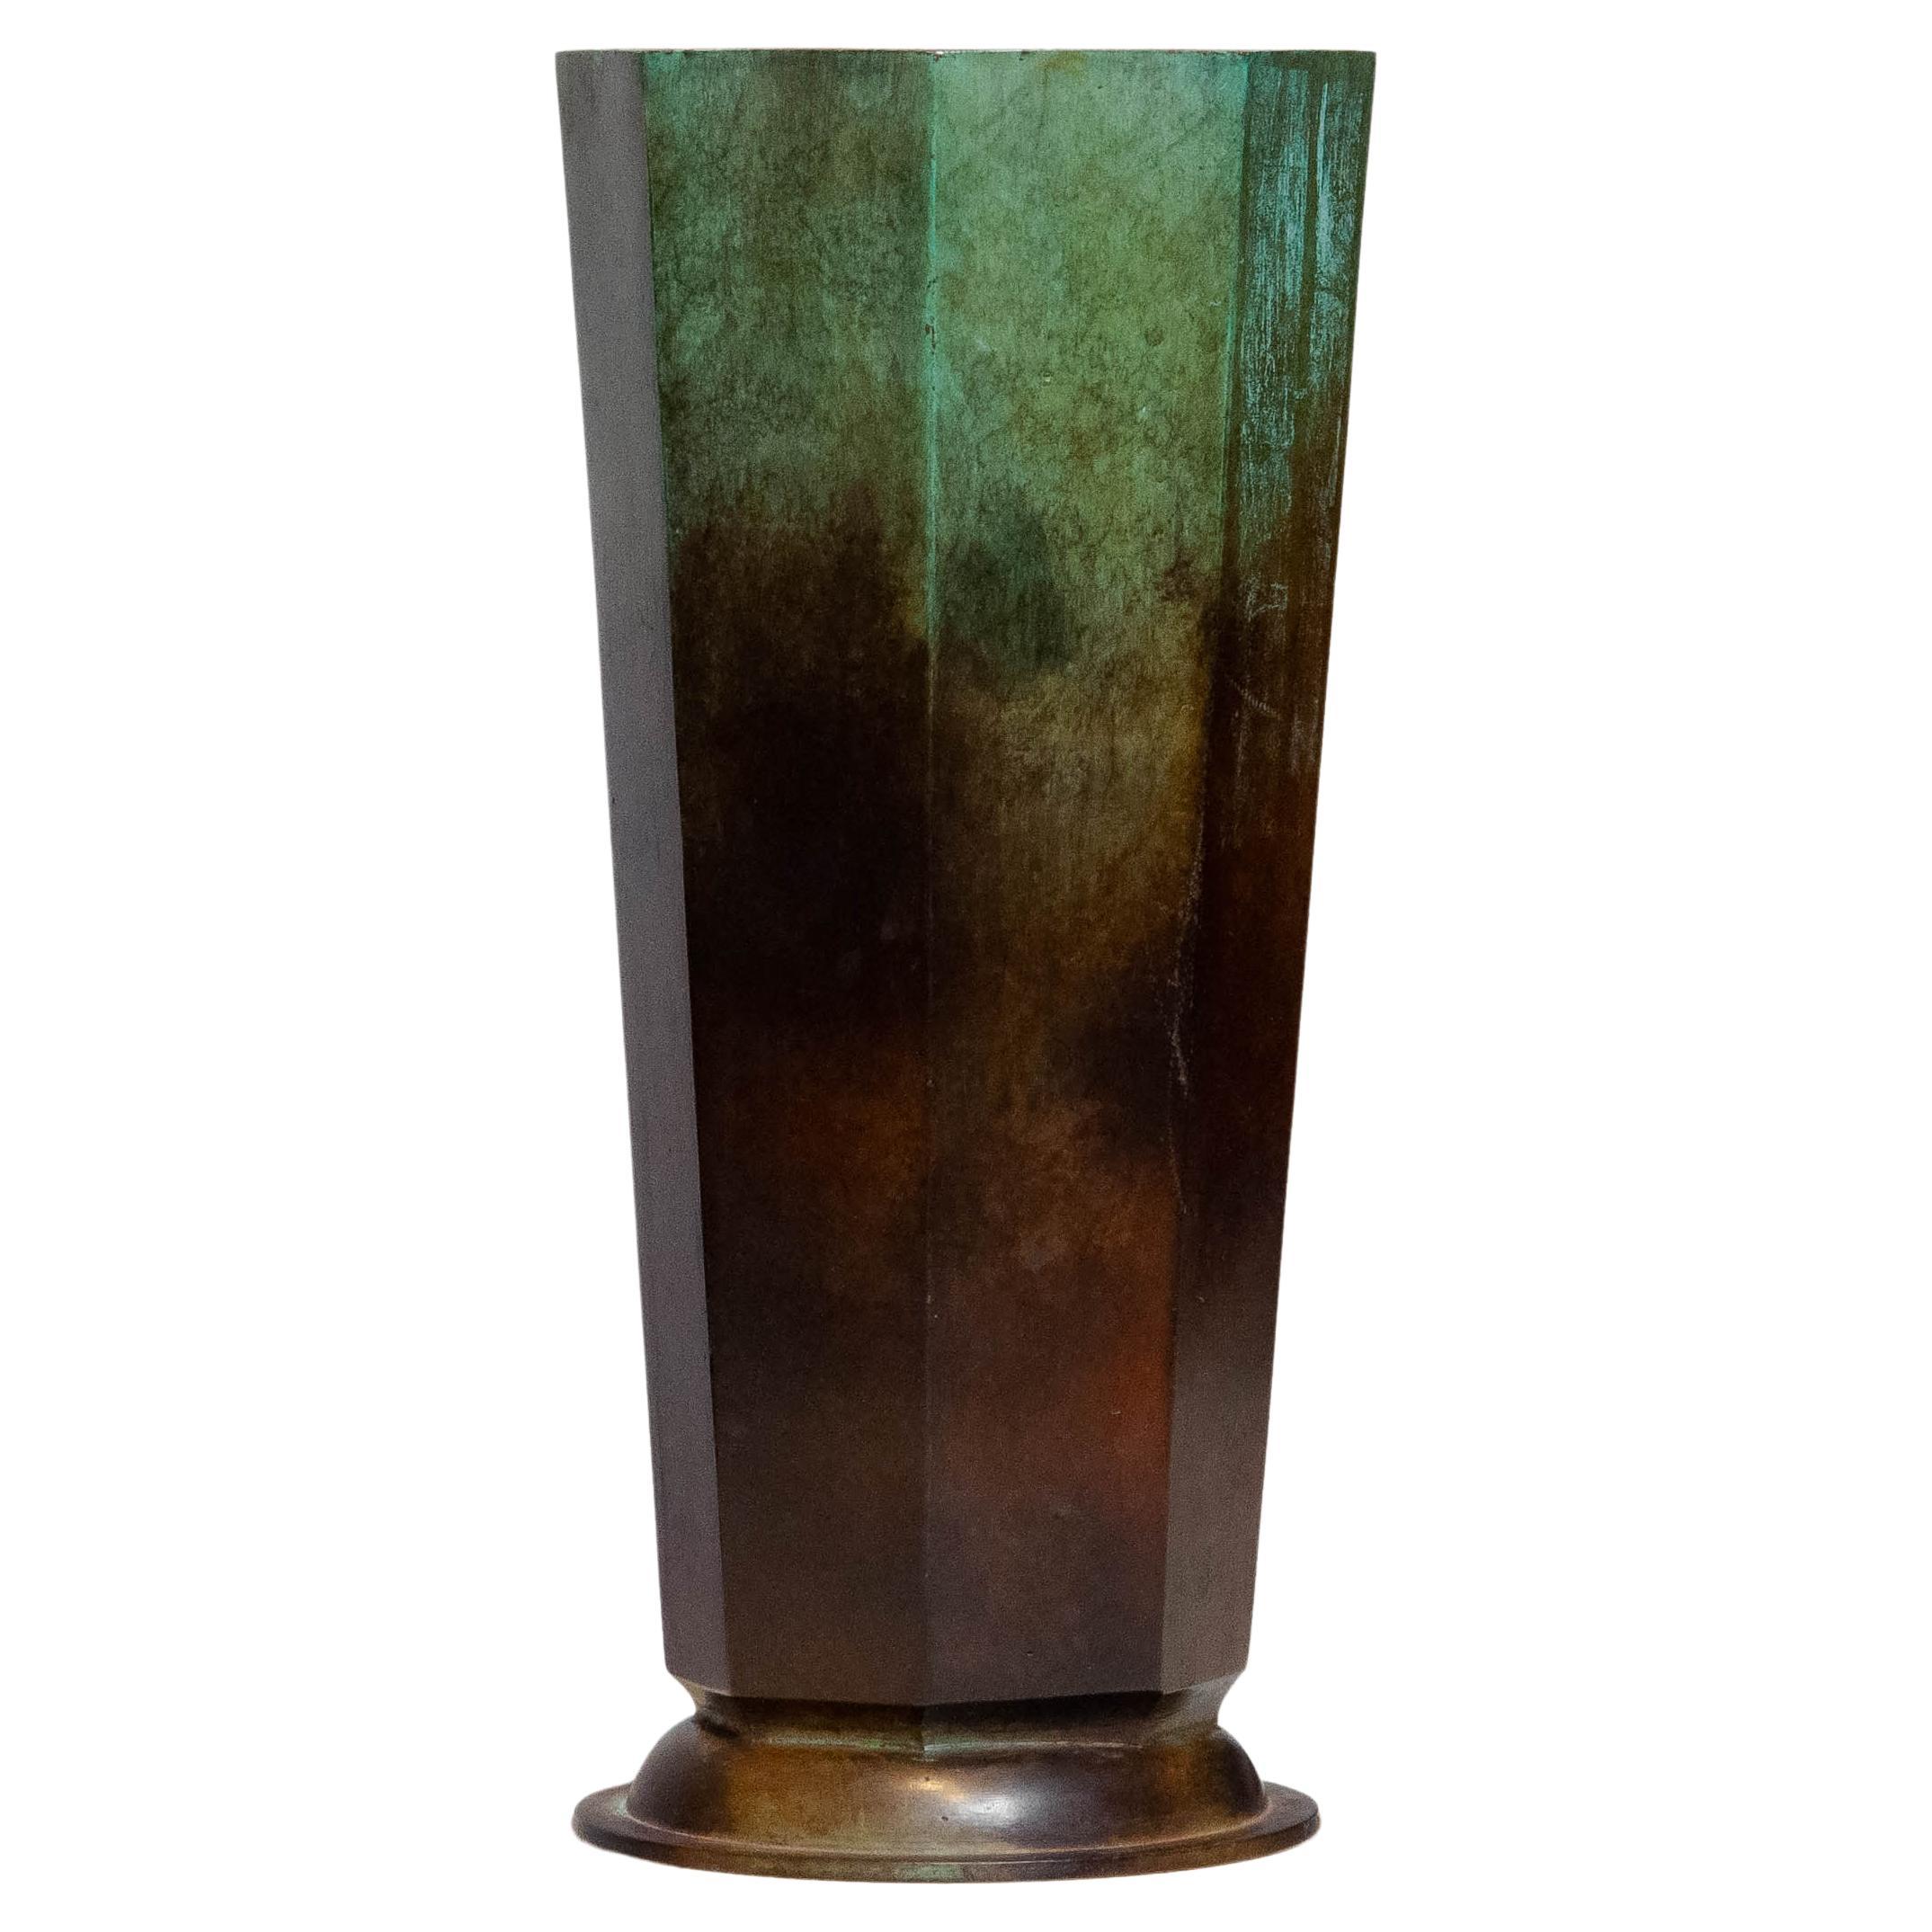 1930's Art Deco Patinated Bronze Vase by GAB Guldsmedsaktiebolaget from Sweden